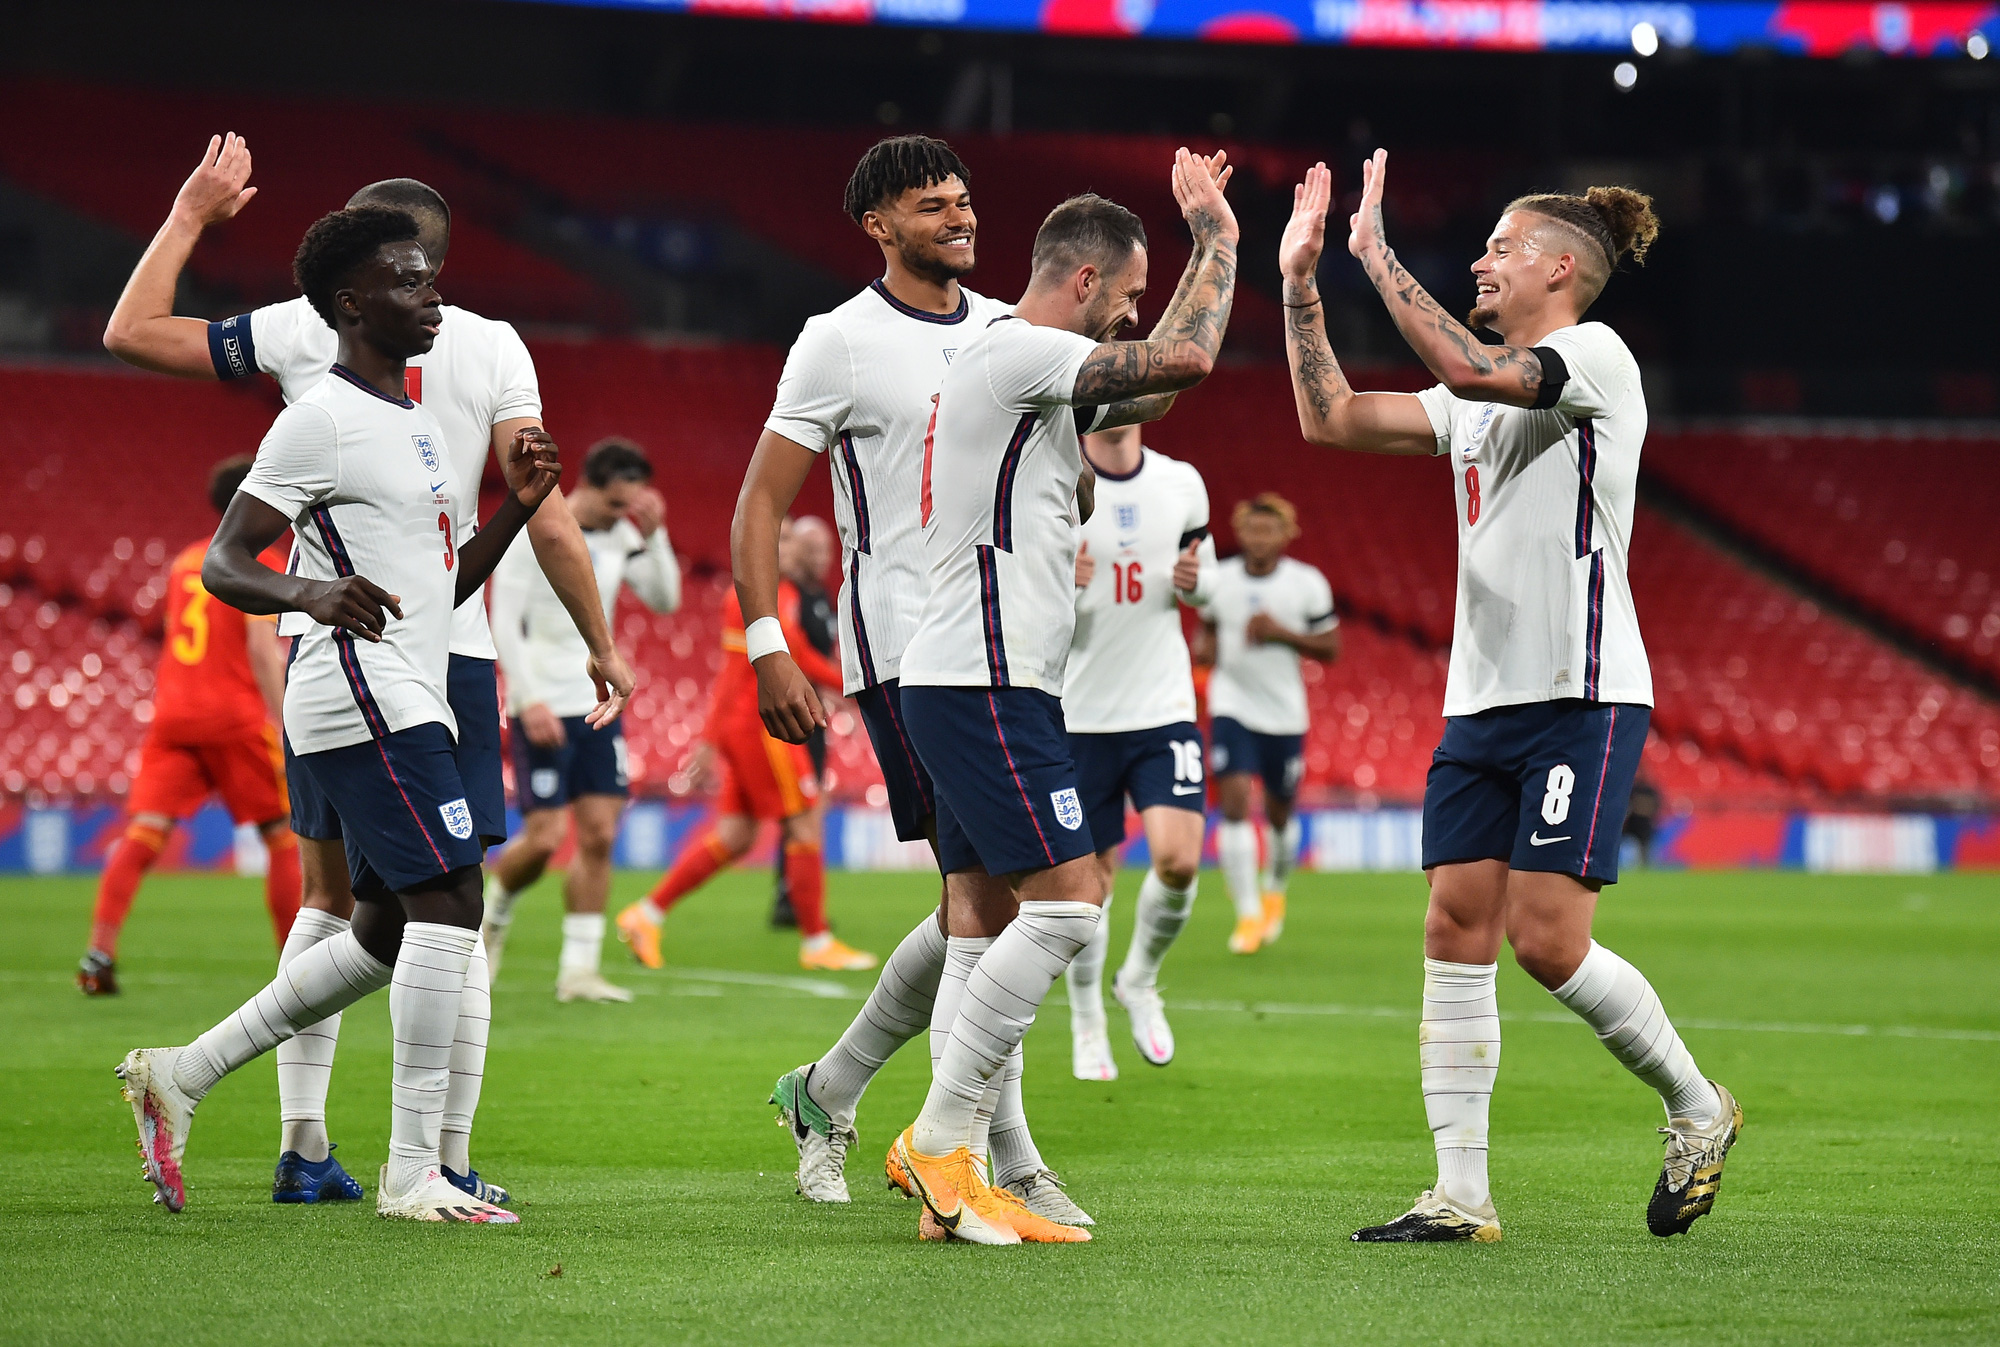 Chân dung đội tuyển Anh tại World Cup 2022 – Chấm dứt cơn khát danh hiệu ?